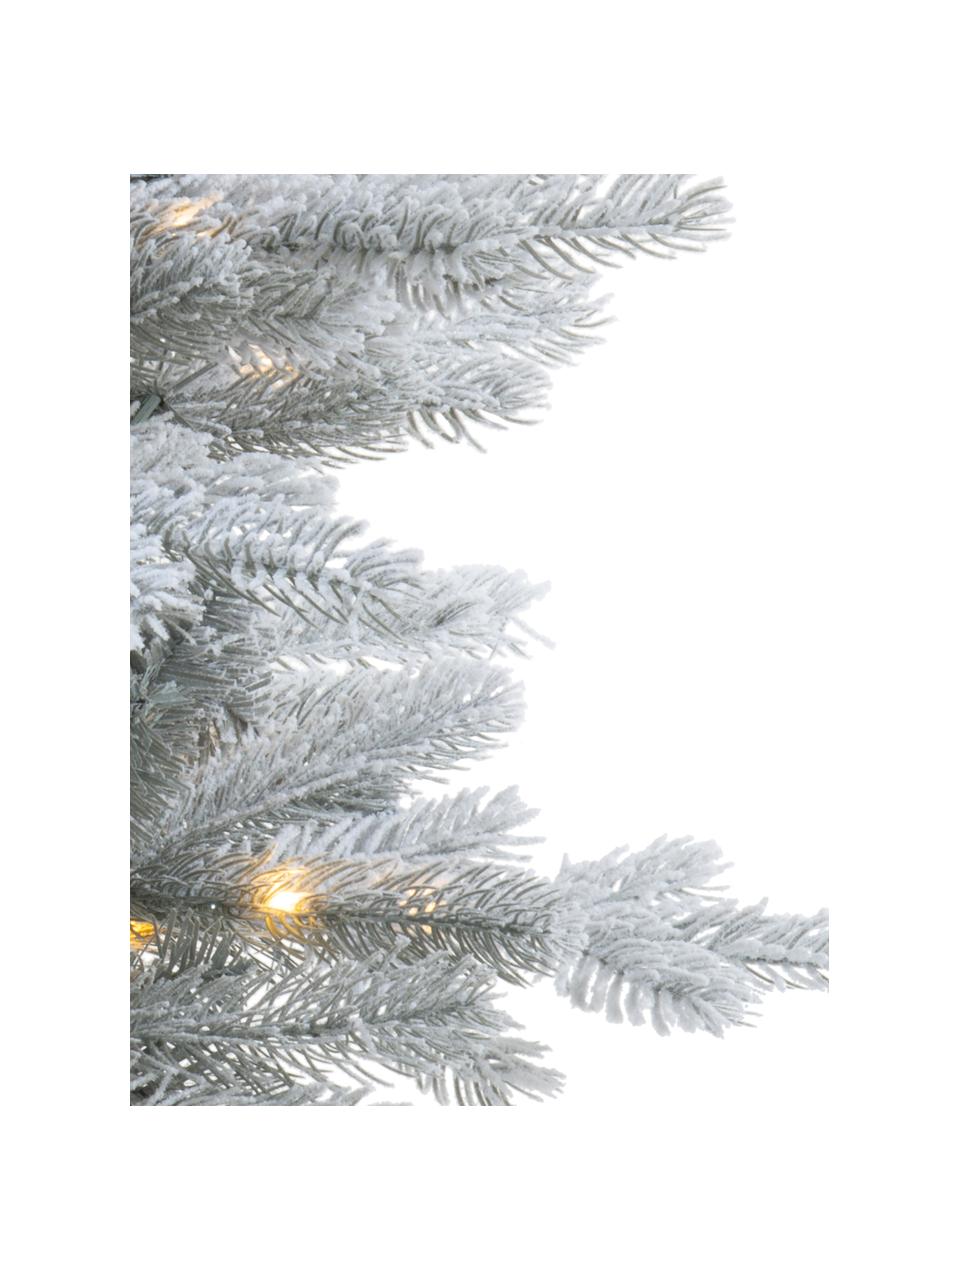 Künstlicher LED-Weihnachtsbaum Grandis H 90 cm, beschneit, Kunststoff (PVC), Salbeigrün, Weiß, Ø 63 x H 90 cm